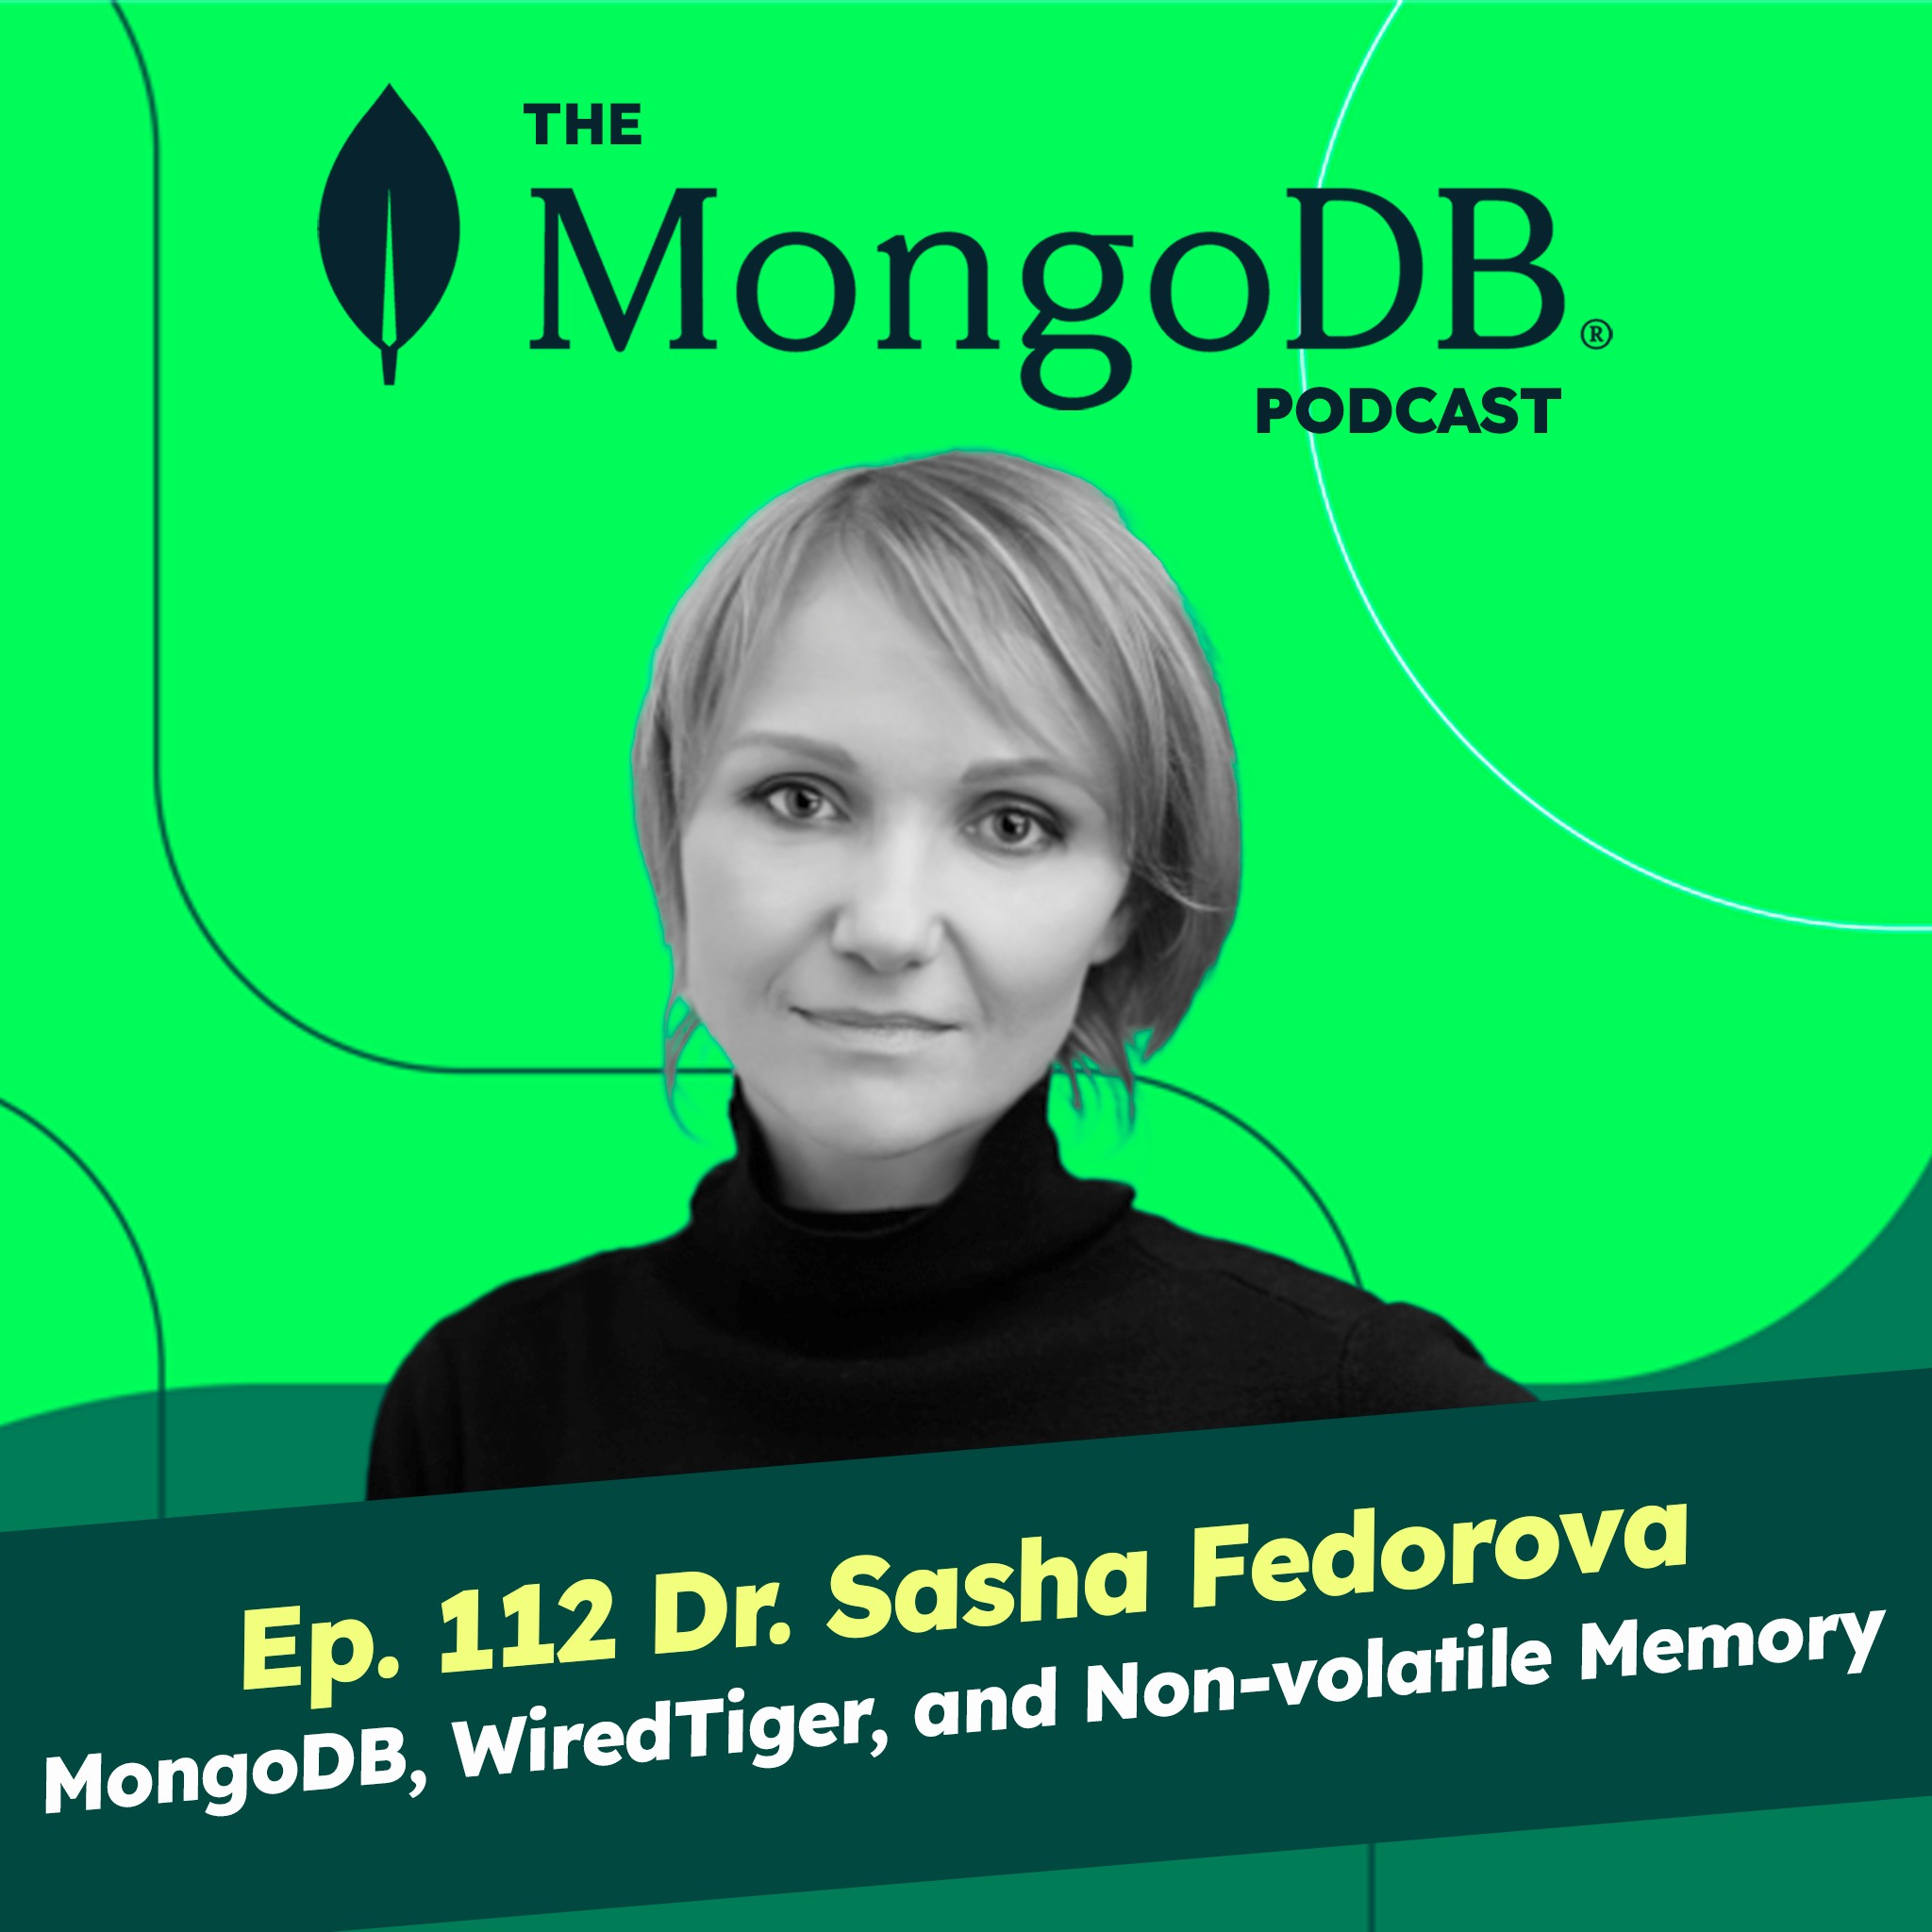 Ep. 112 Dr. Sasha Fedorova of MongoDB Labs